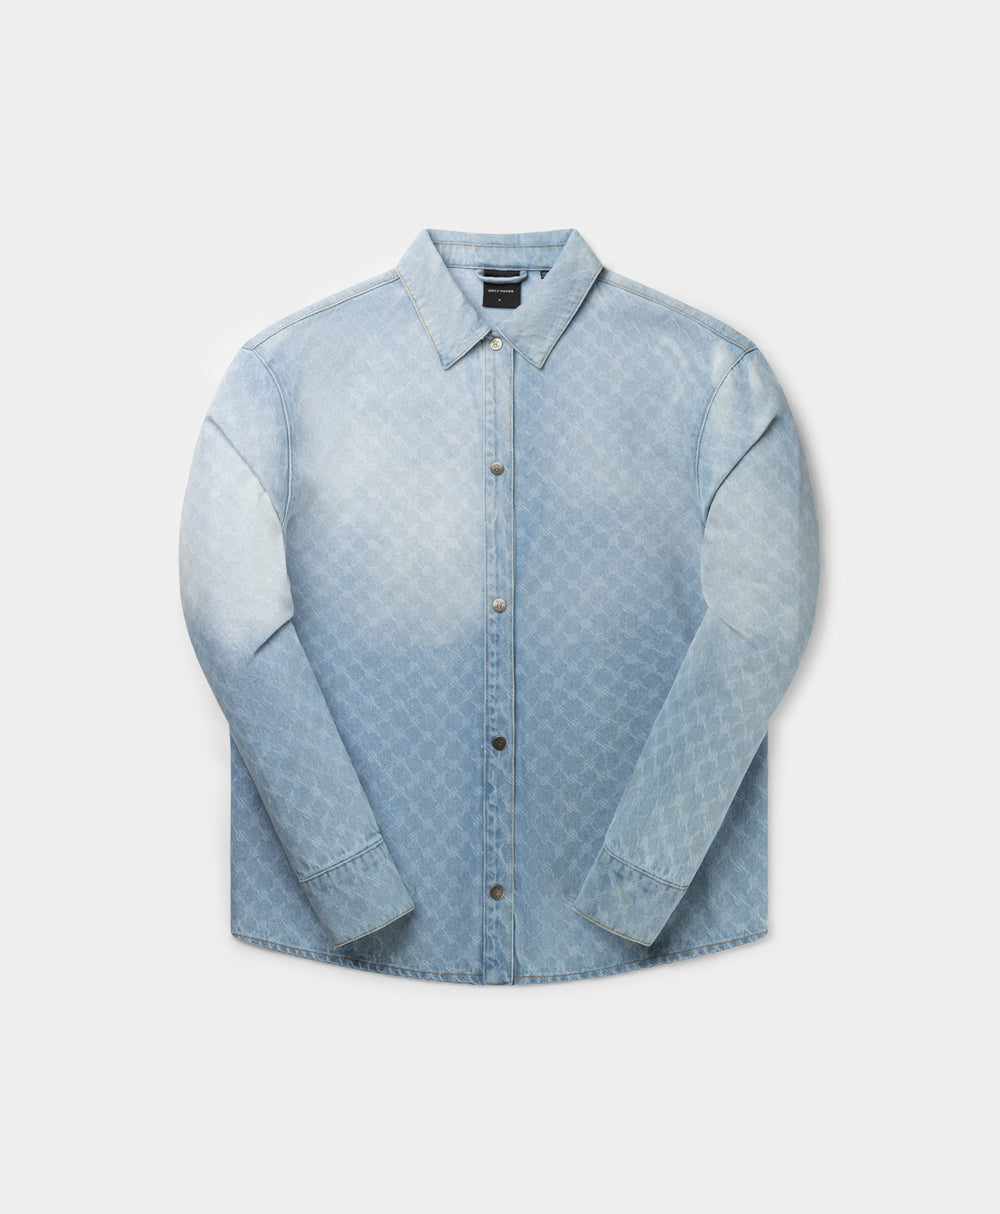 DP - Mid Blue Rahul Monogram Denim Shirt - Packshot - Front